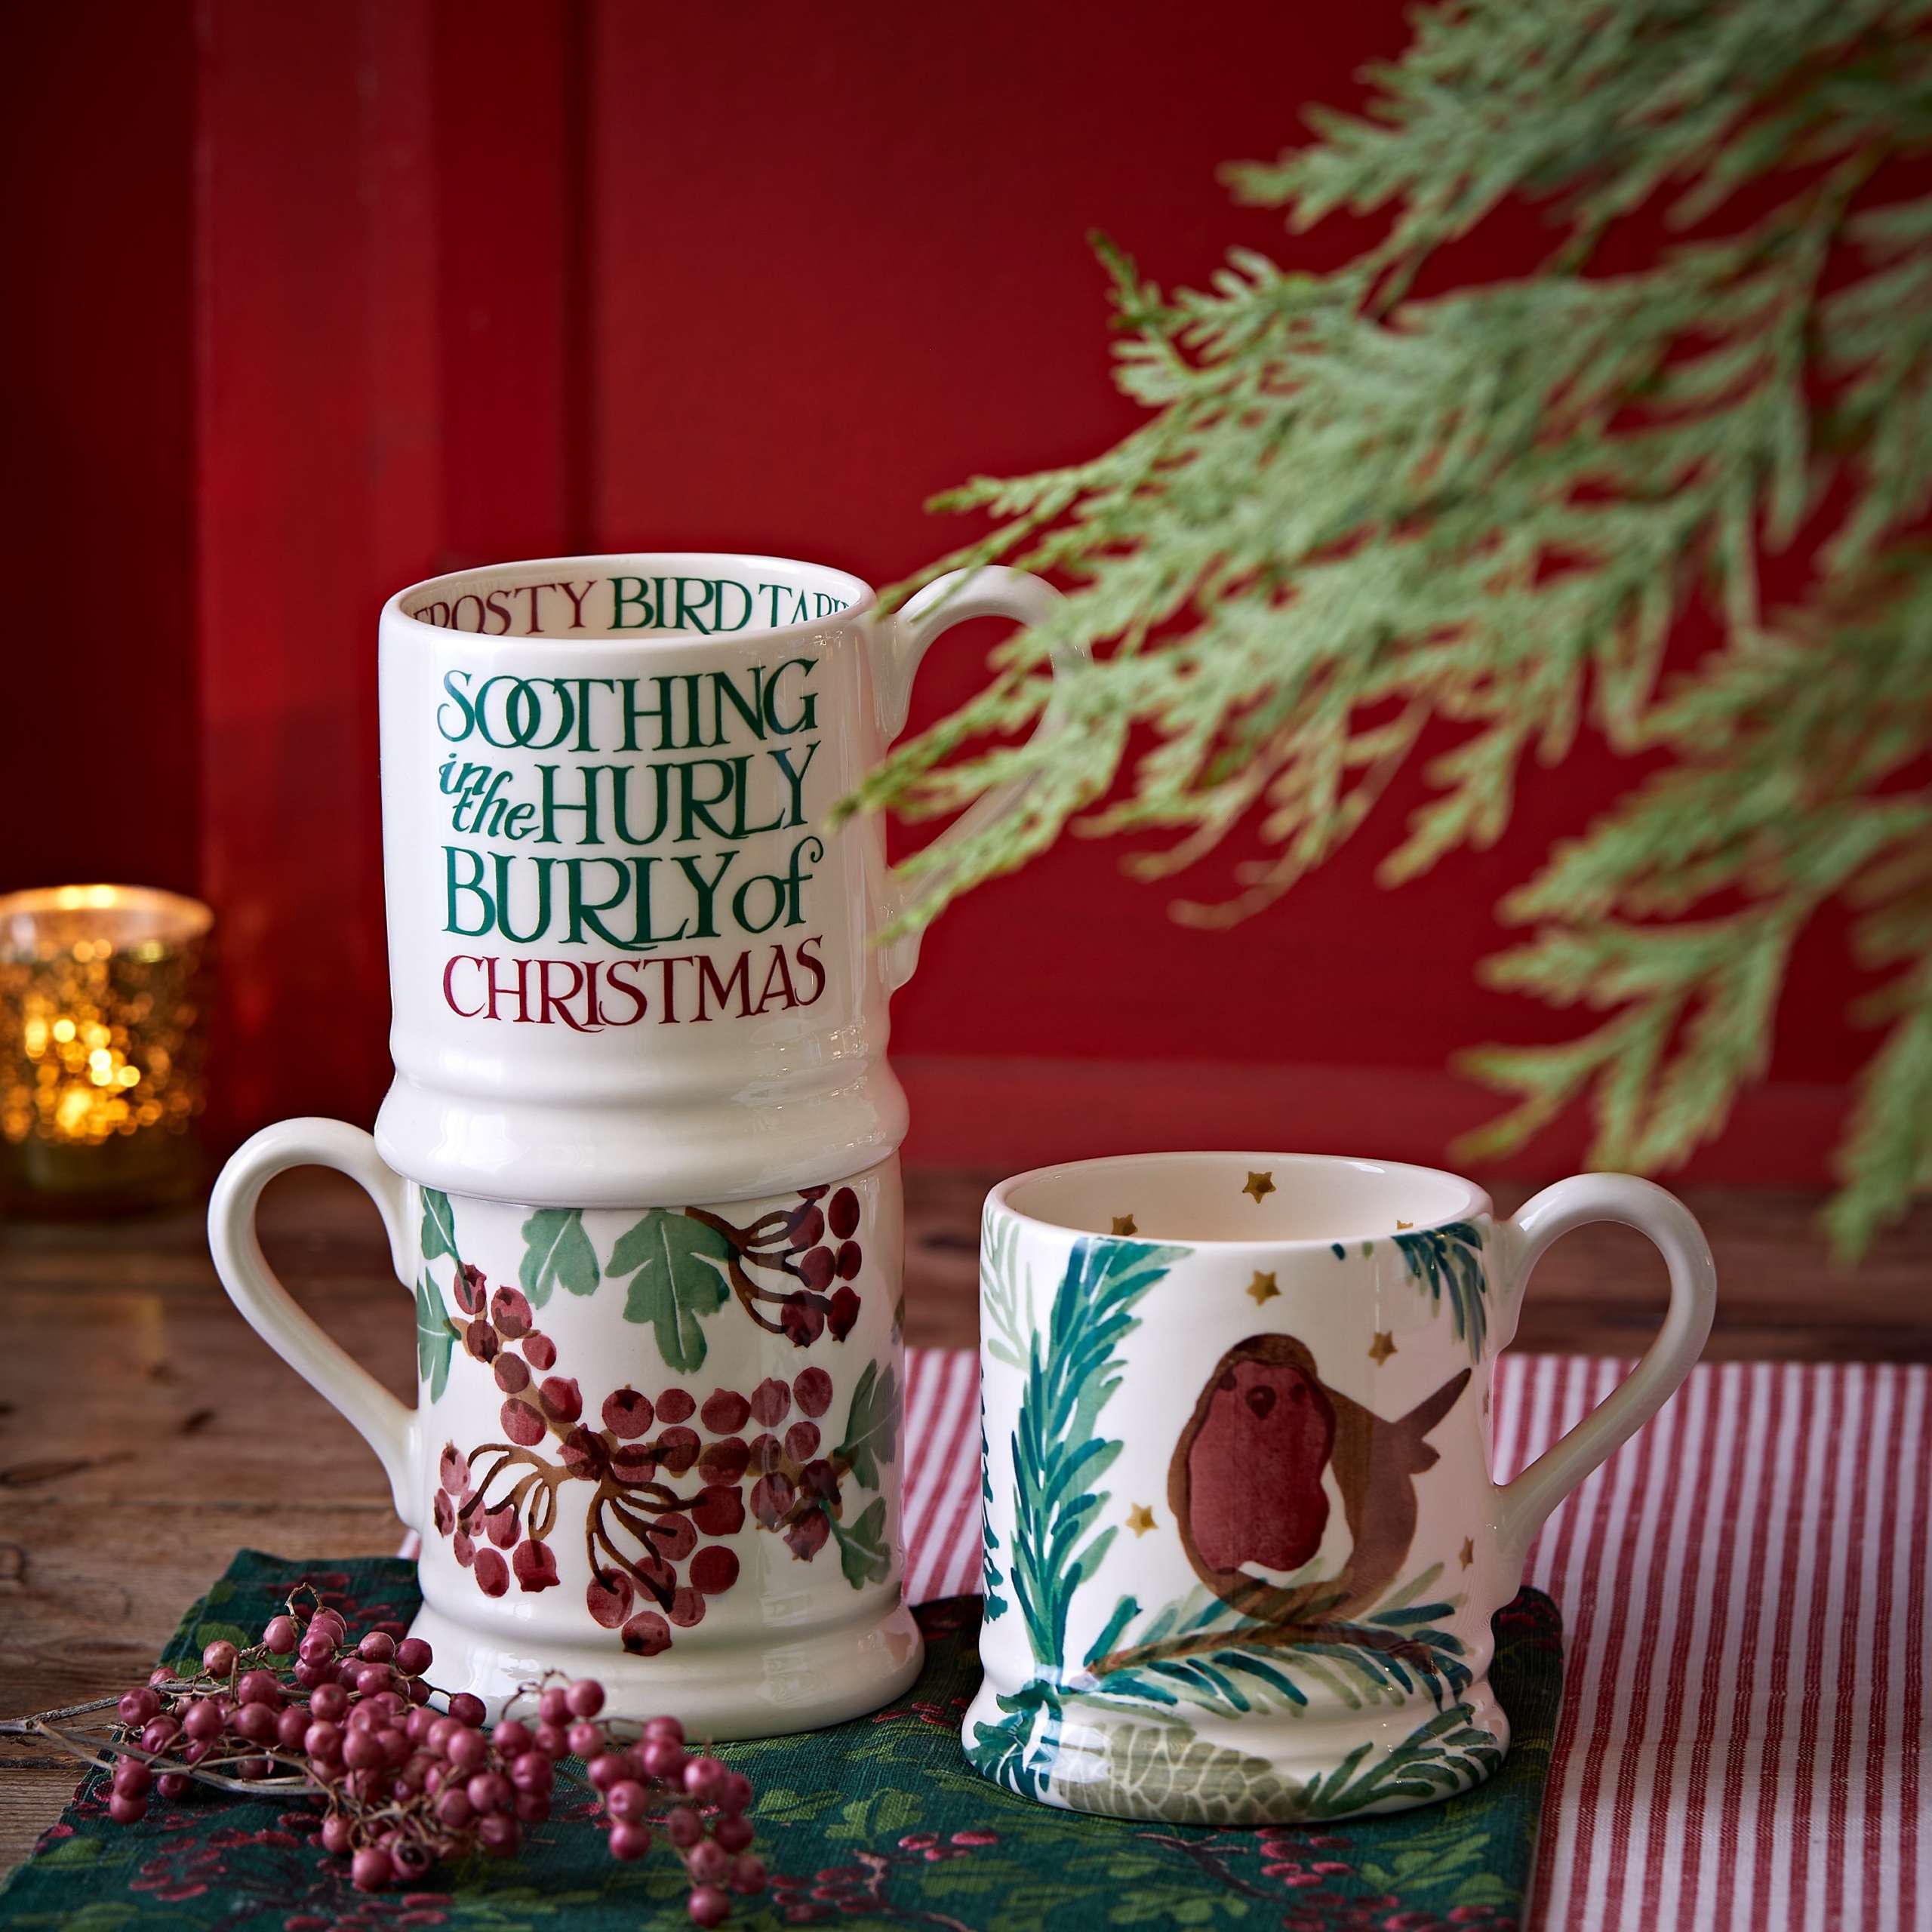 EMMA BRIDGEWATER CHRISTMAS MUGS - Christmas collection Spruce Mug With Robin and berries